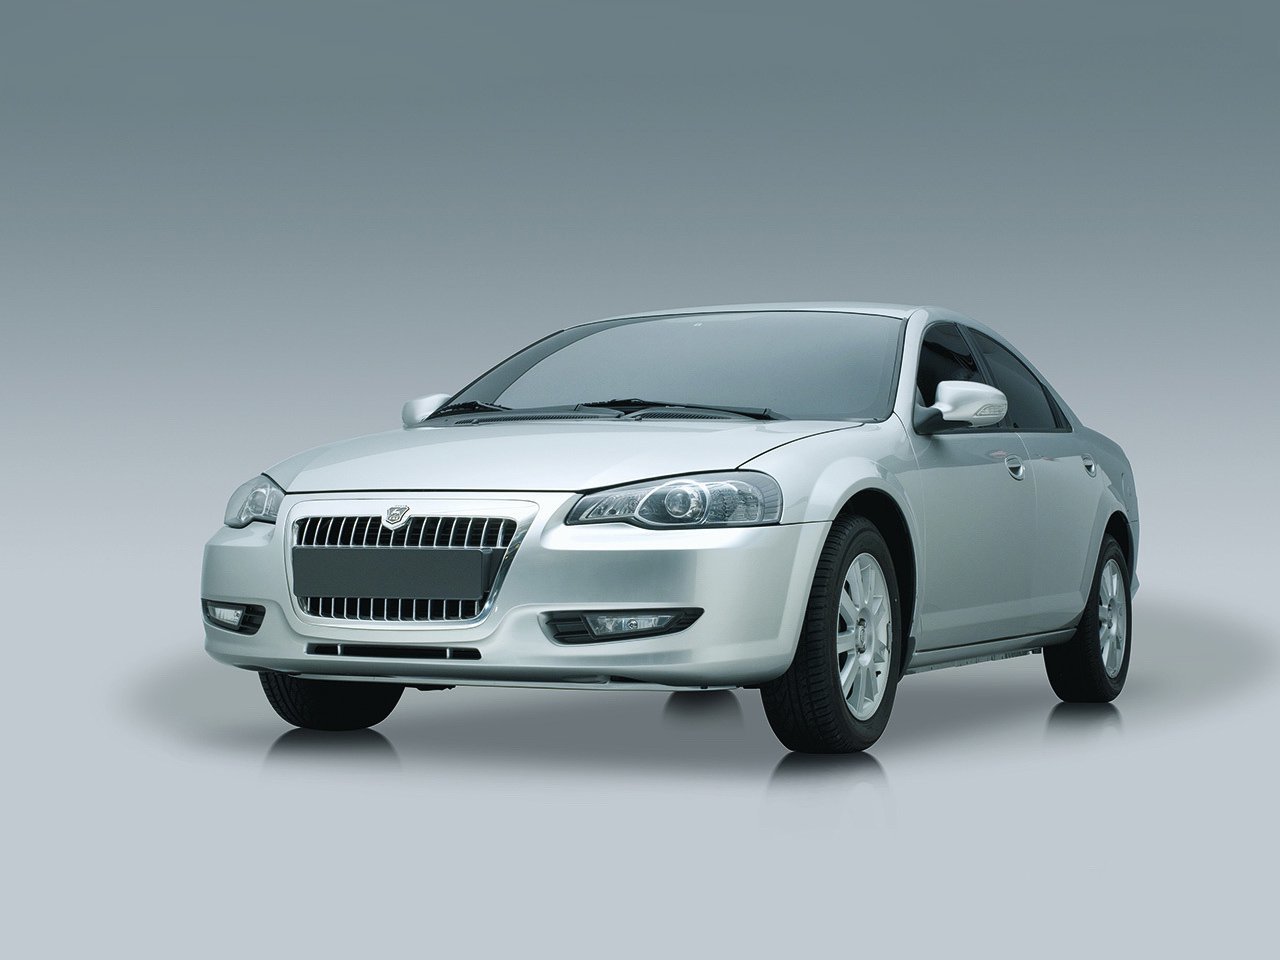 Расход газа трёх комплектаций седана GAZ Volga Siber. Разница стоимости заправки газом и бензином. Автономный пробег до и после установки ГБО.